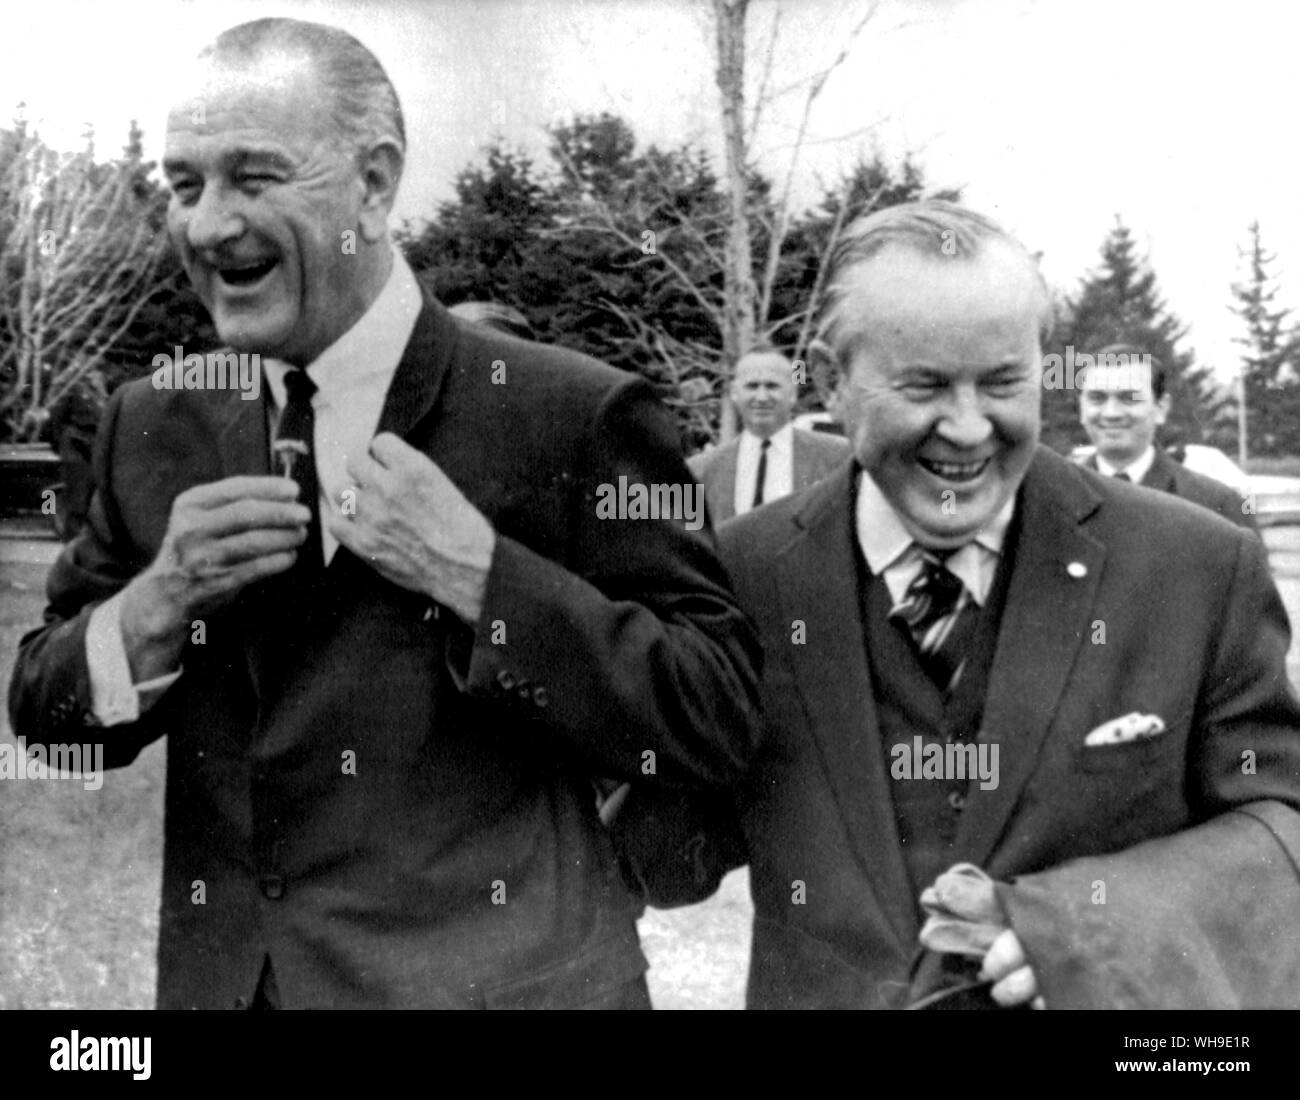 26. Mai 1967: Präsident Lyndon B. Johnson (1908-1973) und der kanadische Premierminister Lester Pearson genießen Sie ein Witz wie Johnson (Präsident der USA 1963-69) eine Narzisse aufhebt und drückt es in seinem Revers. Sie hatten in Montreal, Kanada besucht Expo 67. Stockfoto